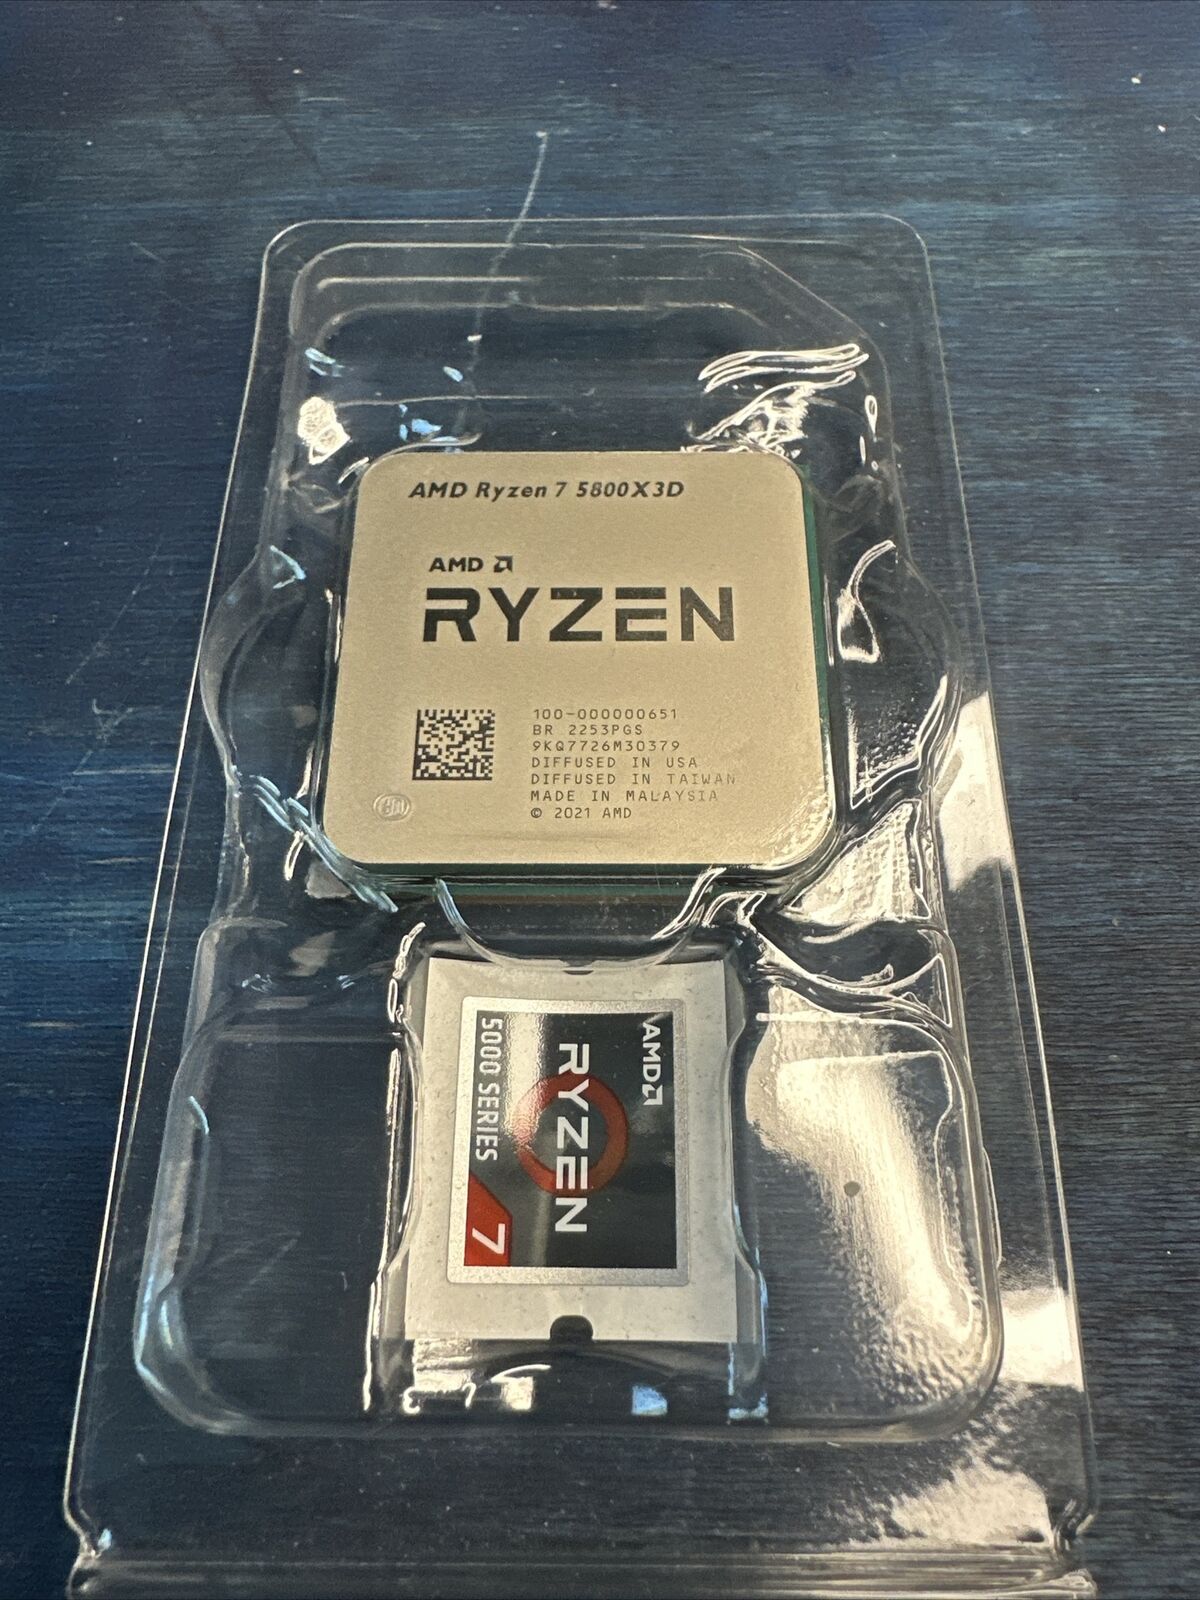 AMD Ryzen 7 5800X3D 8-core, 16-Thread Desktop CPU